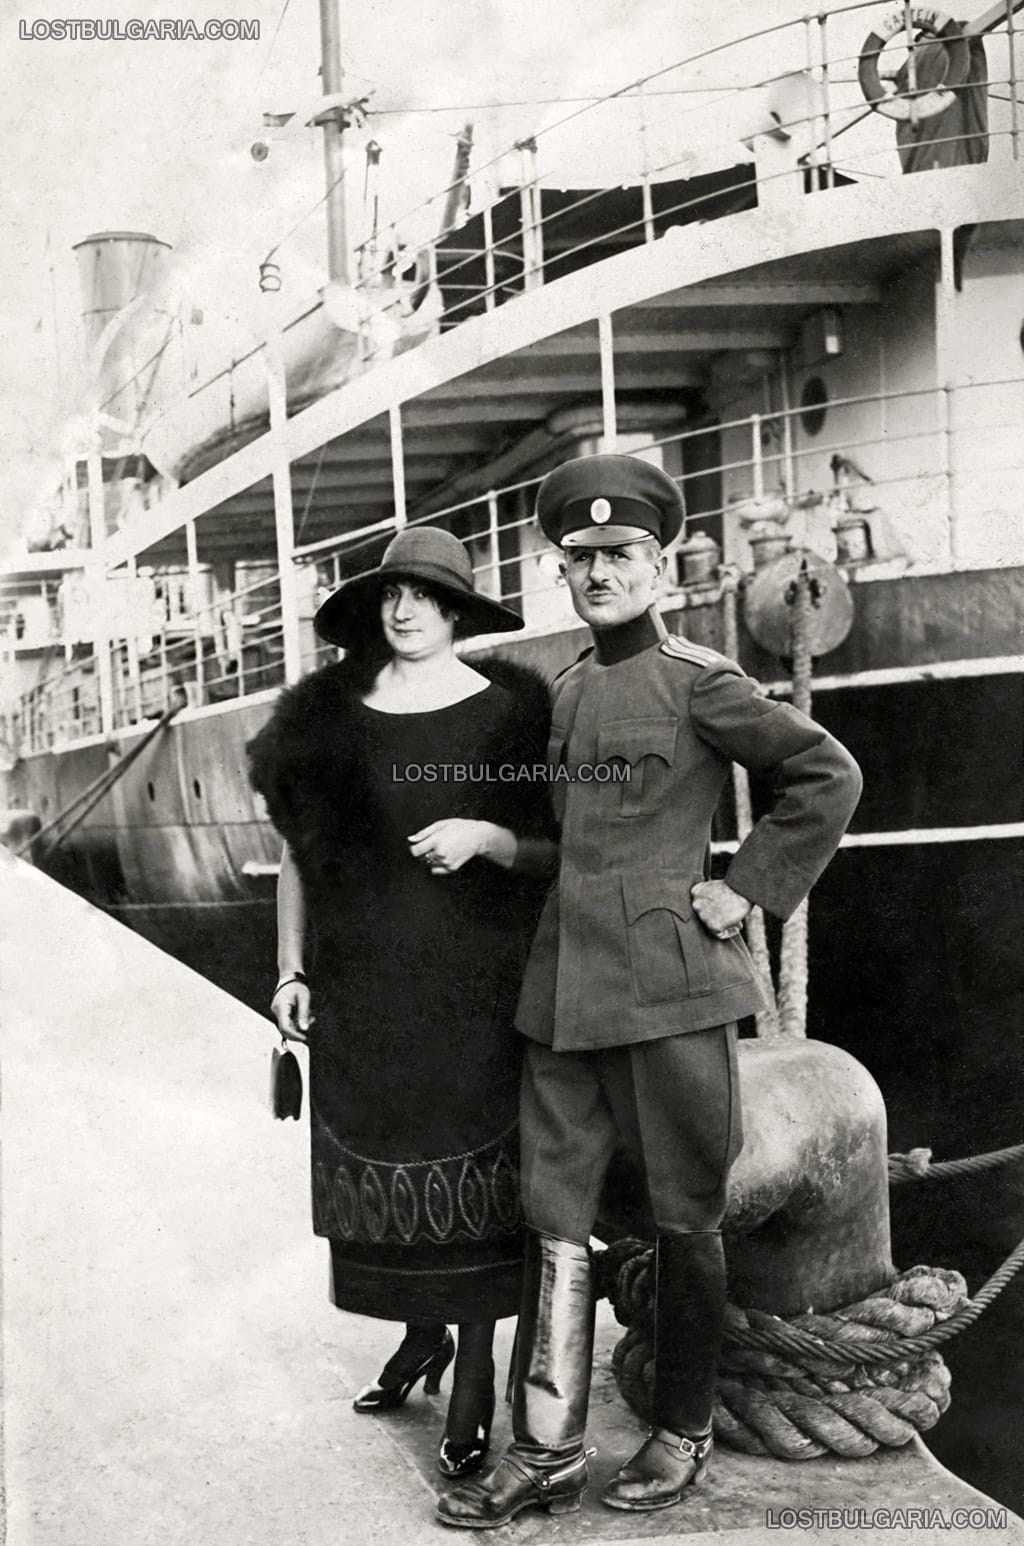 Елегантно облечена дама и офицер, заснети пред пътническия параход "Gastein", вероятно пристанище Бургас, 20-те години на ХХ век